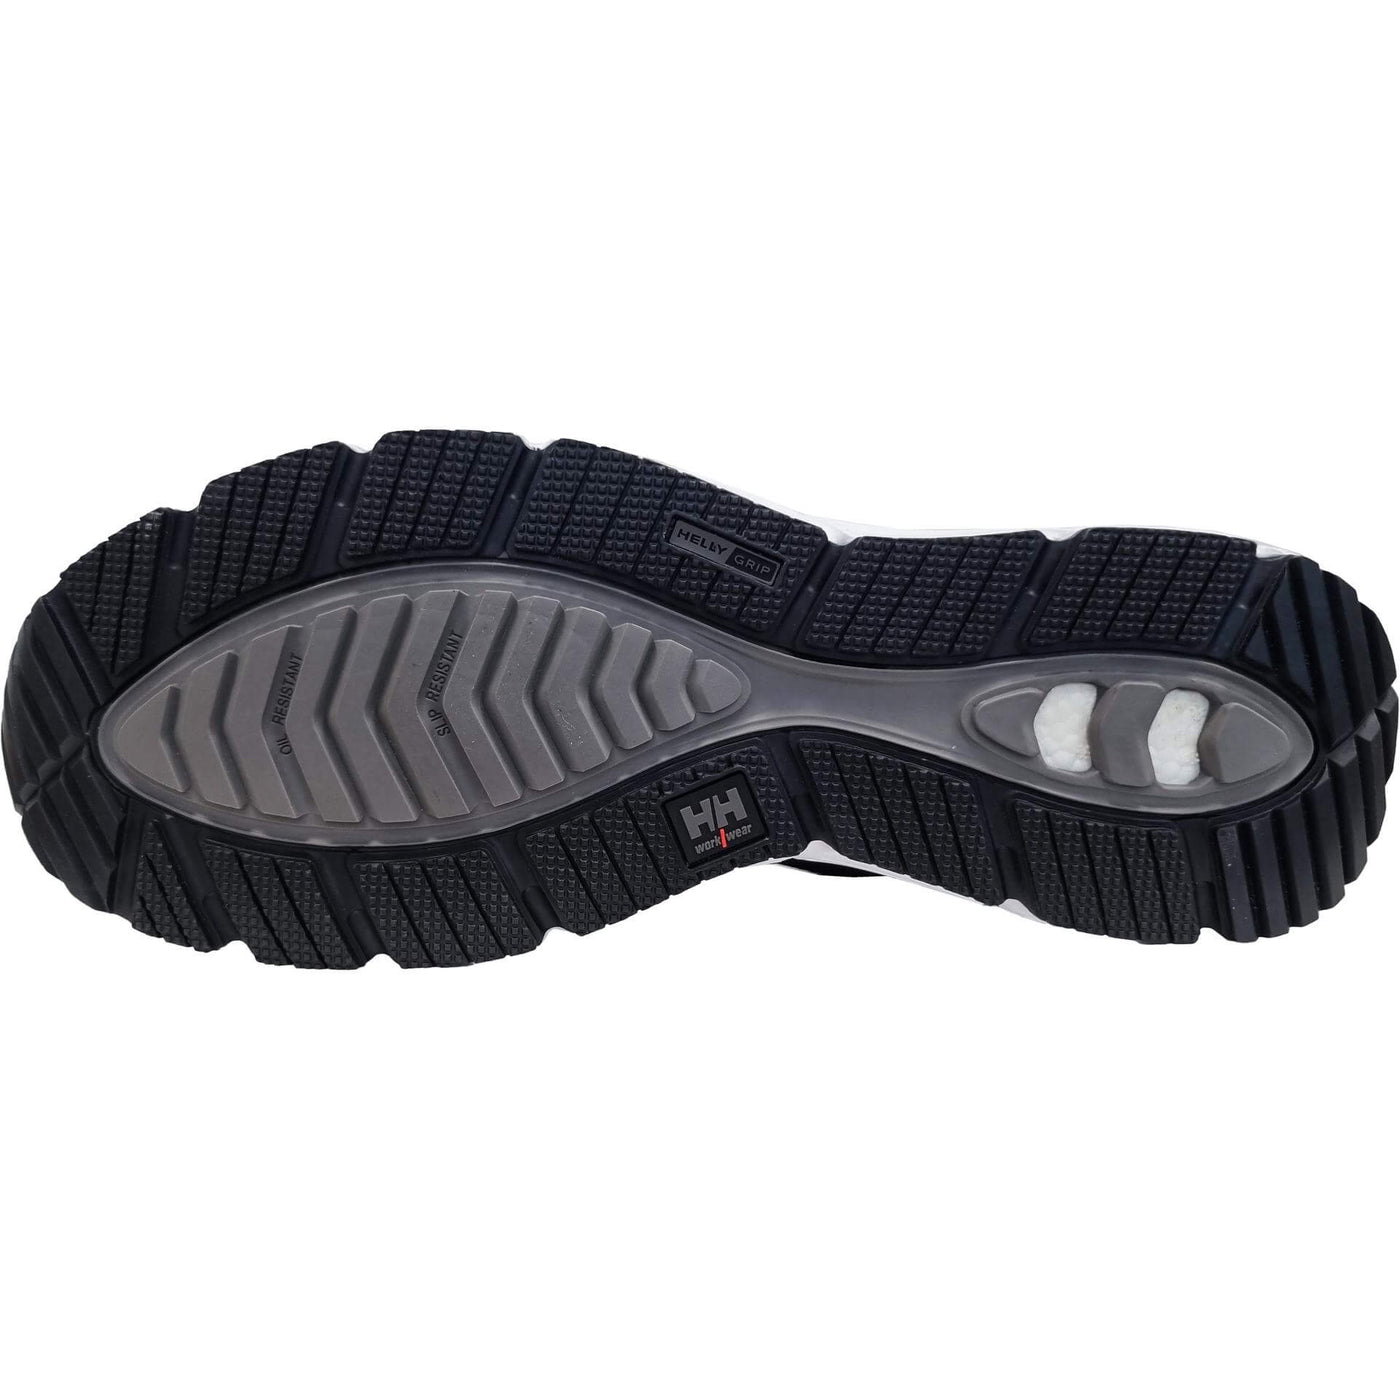 Helly Hansen Kensington MXR Mid S3L Composite Toe Safety Boots Black/White Sole#colour_black-white